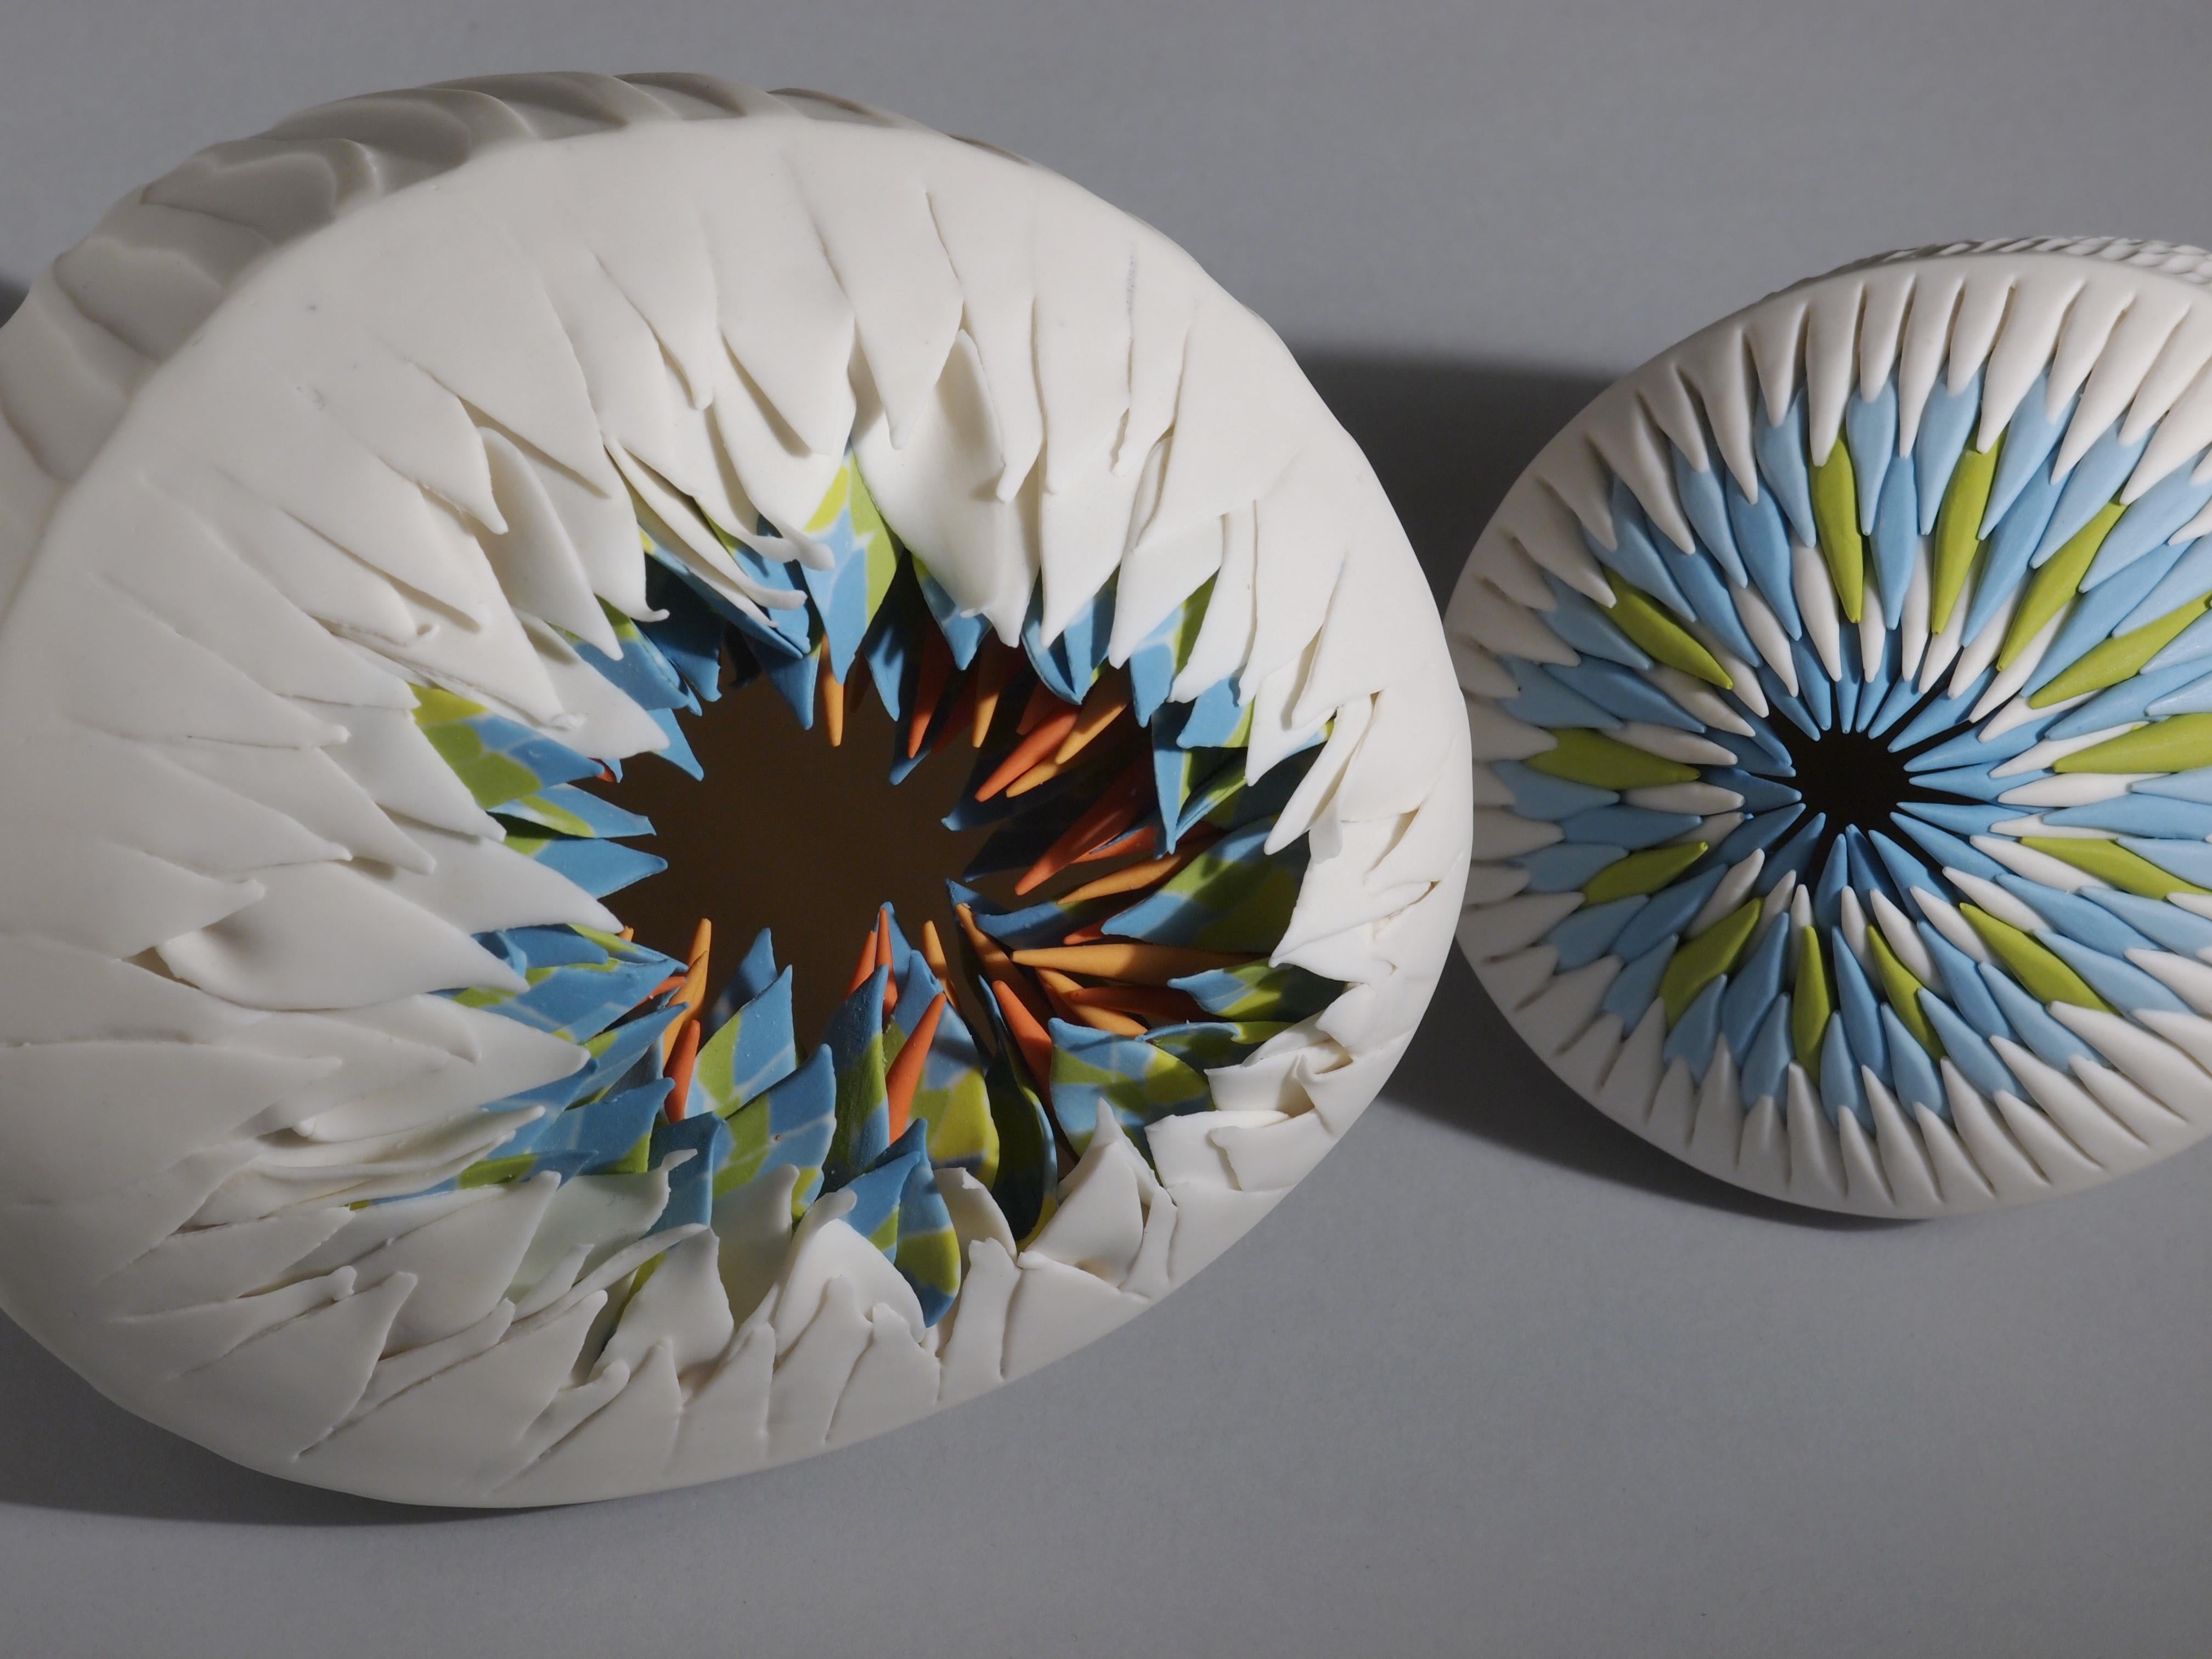 Martha Pachon Rodriguez, groupe de 2 pièces Sea Urchins, 2019, porcelaine. Des pièces uniques, entièrement réalisées à la main. 

Pièce 1 : 23 x 16 x 17 cm 
Pièce2 : 15 x 11 x 12 cm

Ces pièces sculpturales en porcelaine, inspirées par le